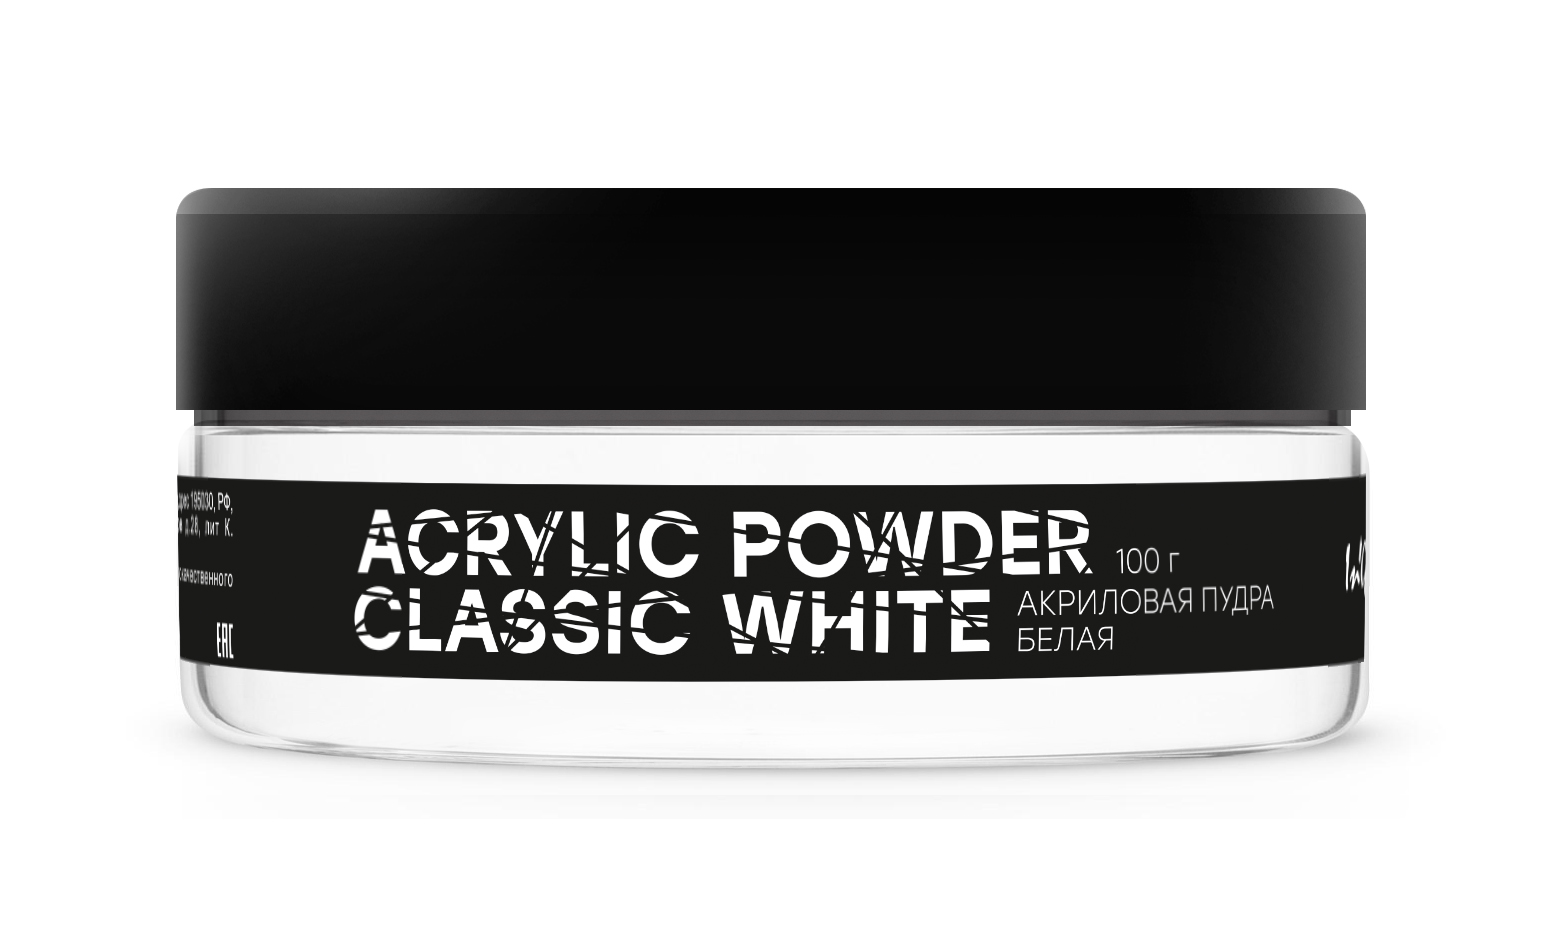 Акриловая пудра белая Acrylic Powder Classic White, 100 г паста для моделирования 250 грамм белая